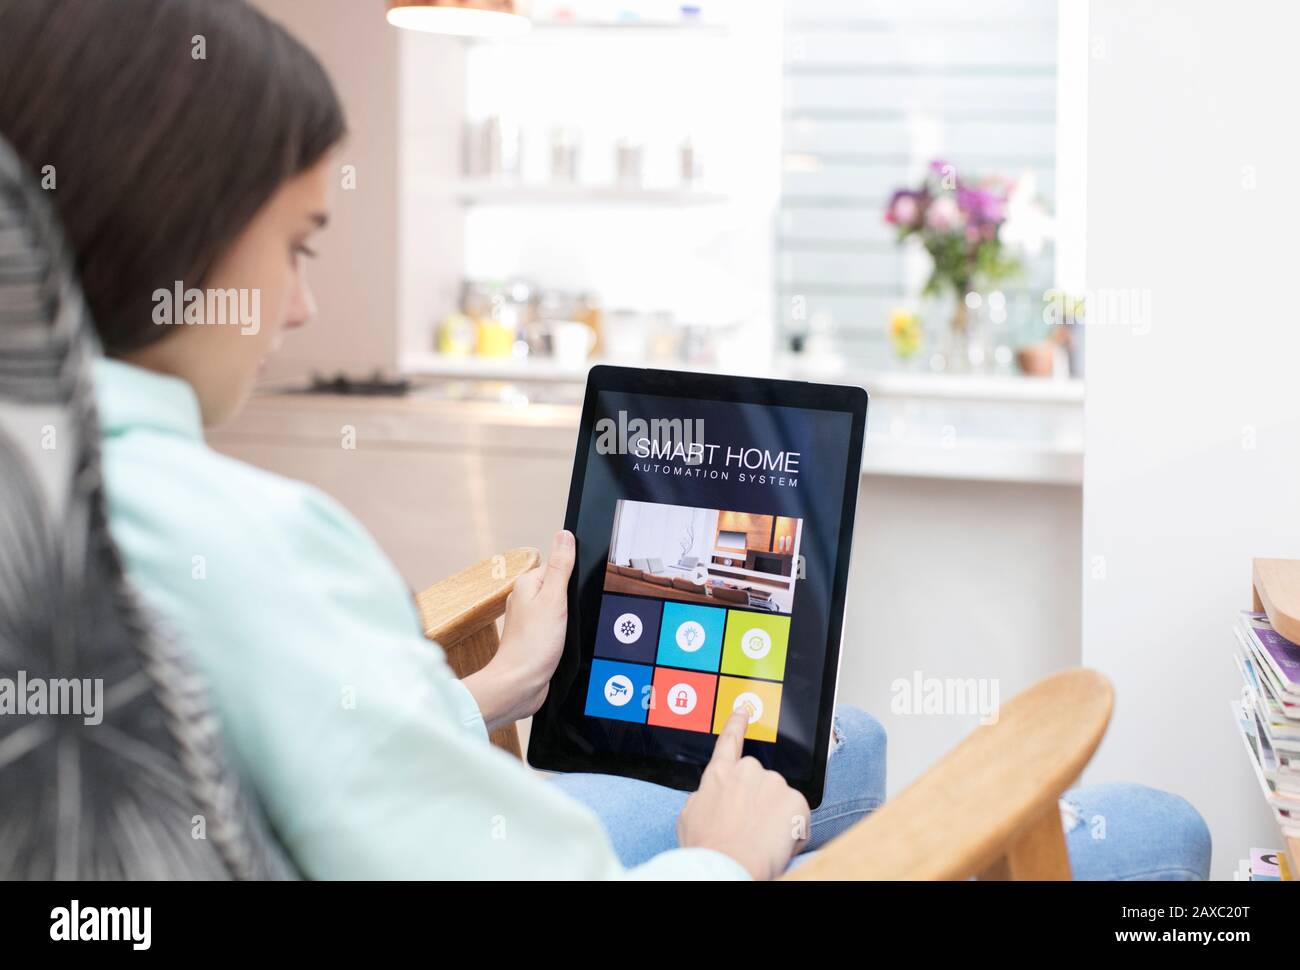 Chica que utiliza el sistema inteligente de automatización doméstica en la tableta digital Foto de stock